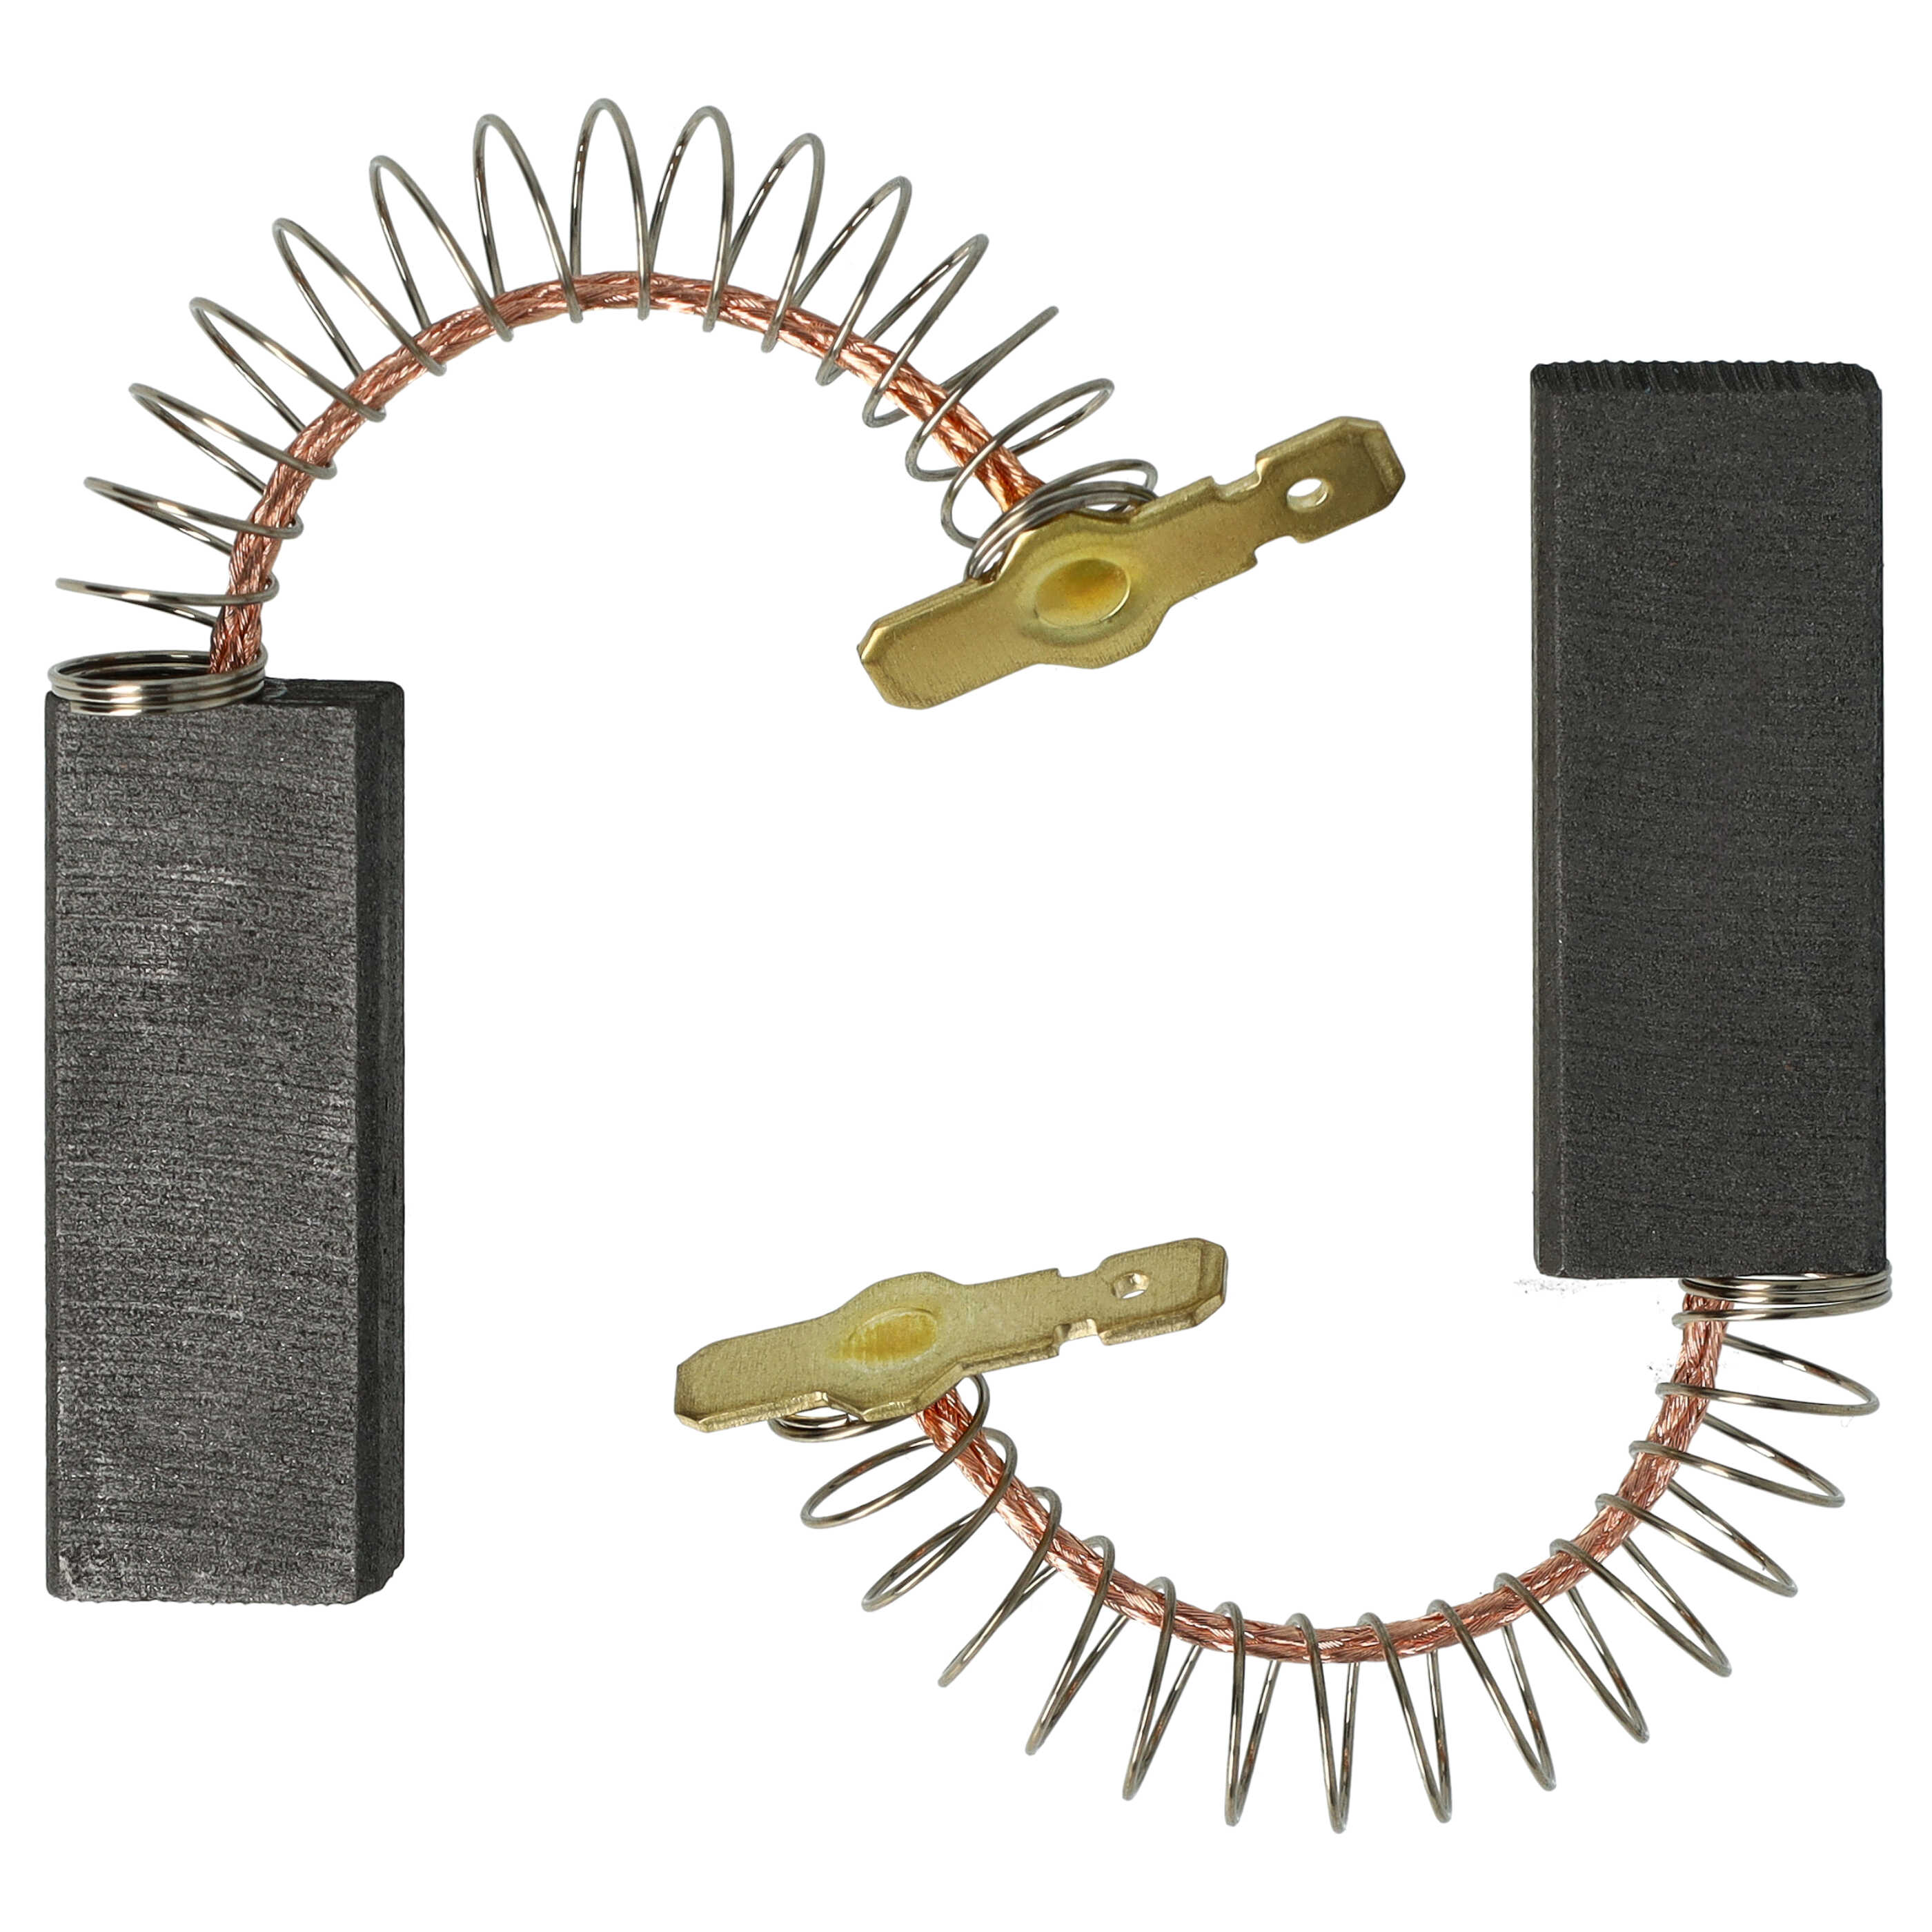 2x Spazzola carbone sostituisce Bosch 154740 per utensili + molla + manicotto spina piatta, 5 x 12 x 33 mm